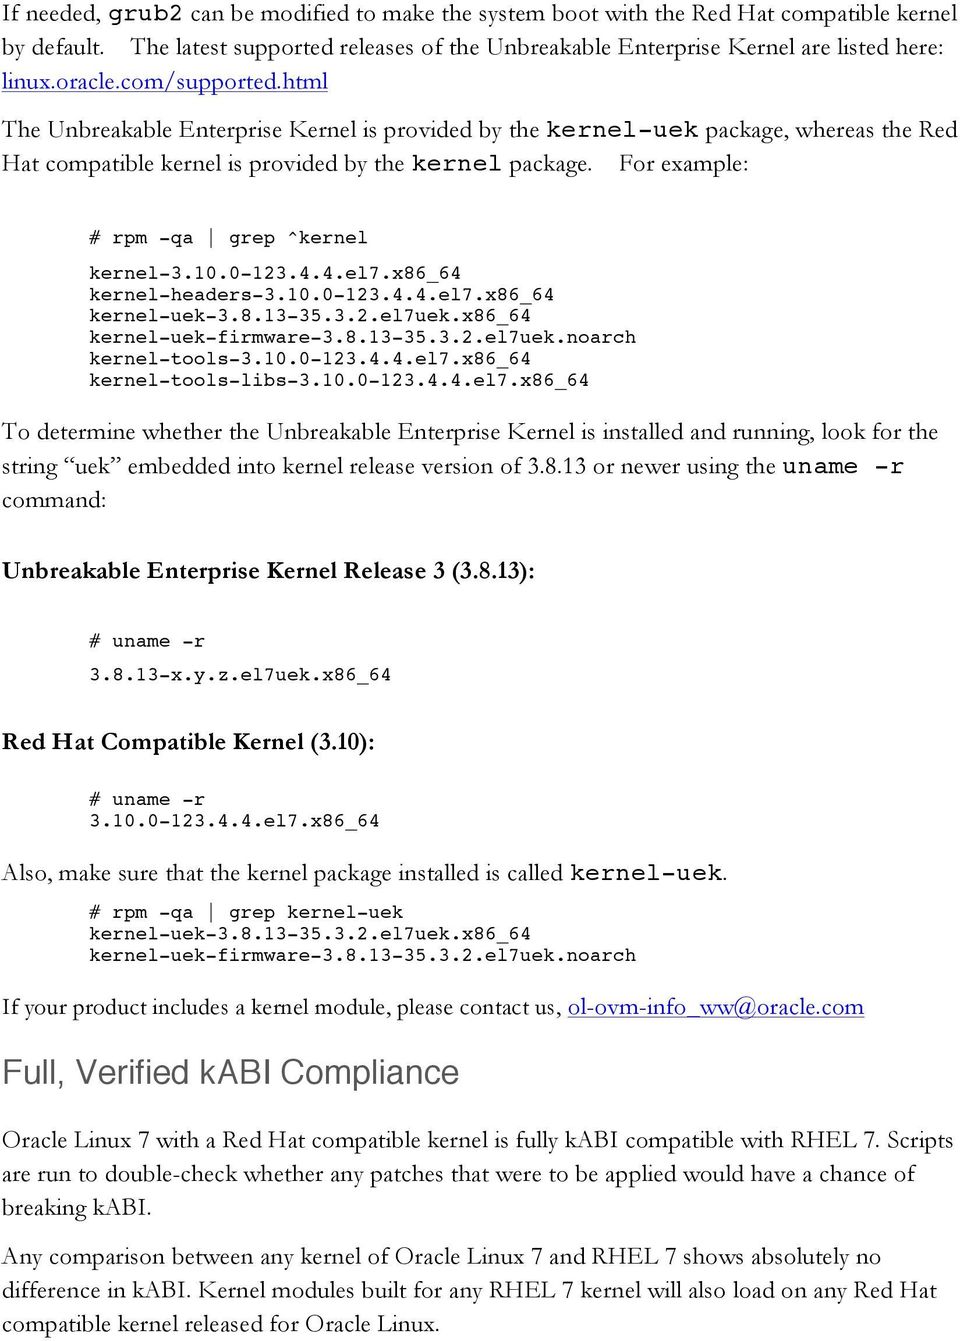 For example: # rpm -qa grep ^kernel kernel-3.10.0-123.4.4.el7.x86_64 kernel-headers-3.10.0-123.4.4.el7.x86_64 kernel-uek-3.8.13-35.3.2.el7uek.x86_64 kernel-uek-firmware-3.8.13-35.3.2.el7uek.noarch kernel-tools-3.